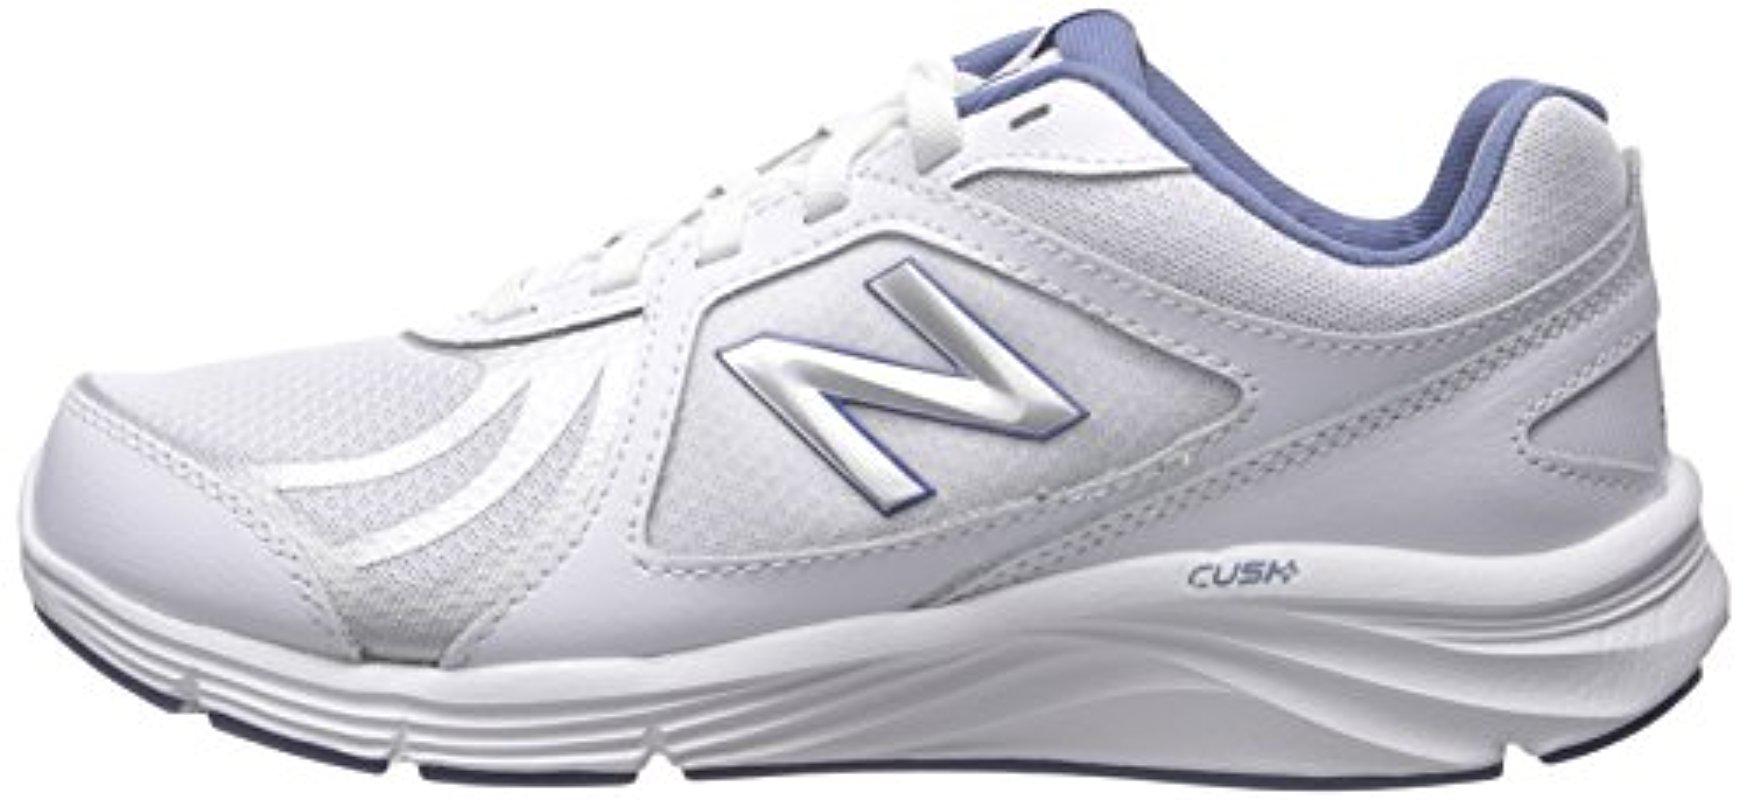 New Balance Lace Ww496v3 Walking Shoe-w Cush + Walking Shoe in White ...